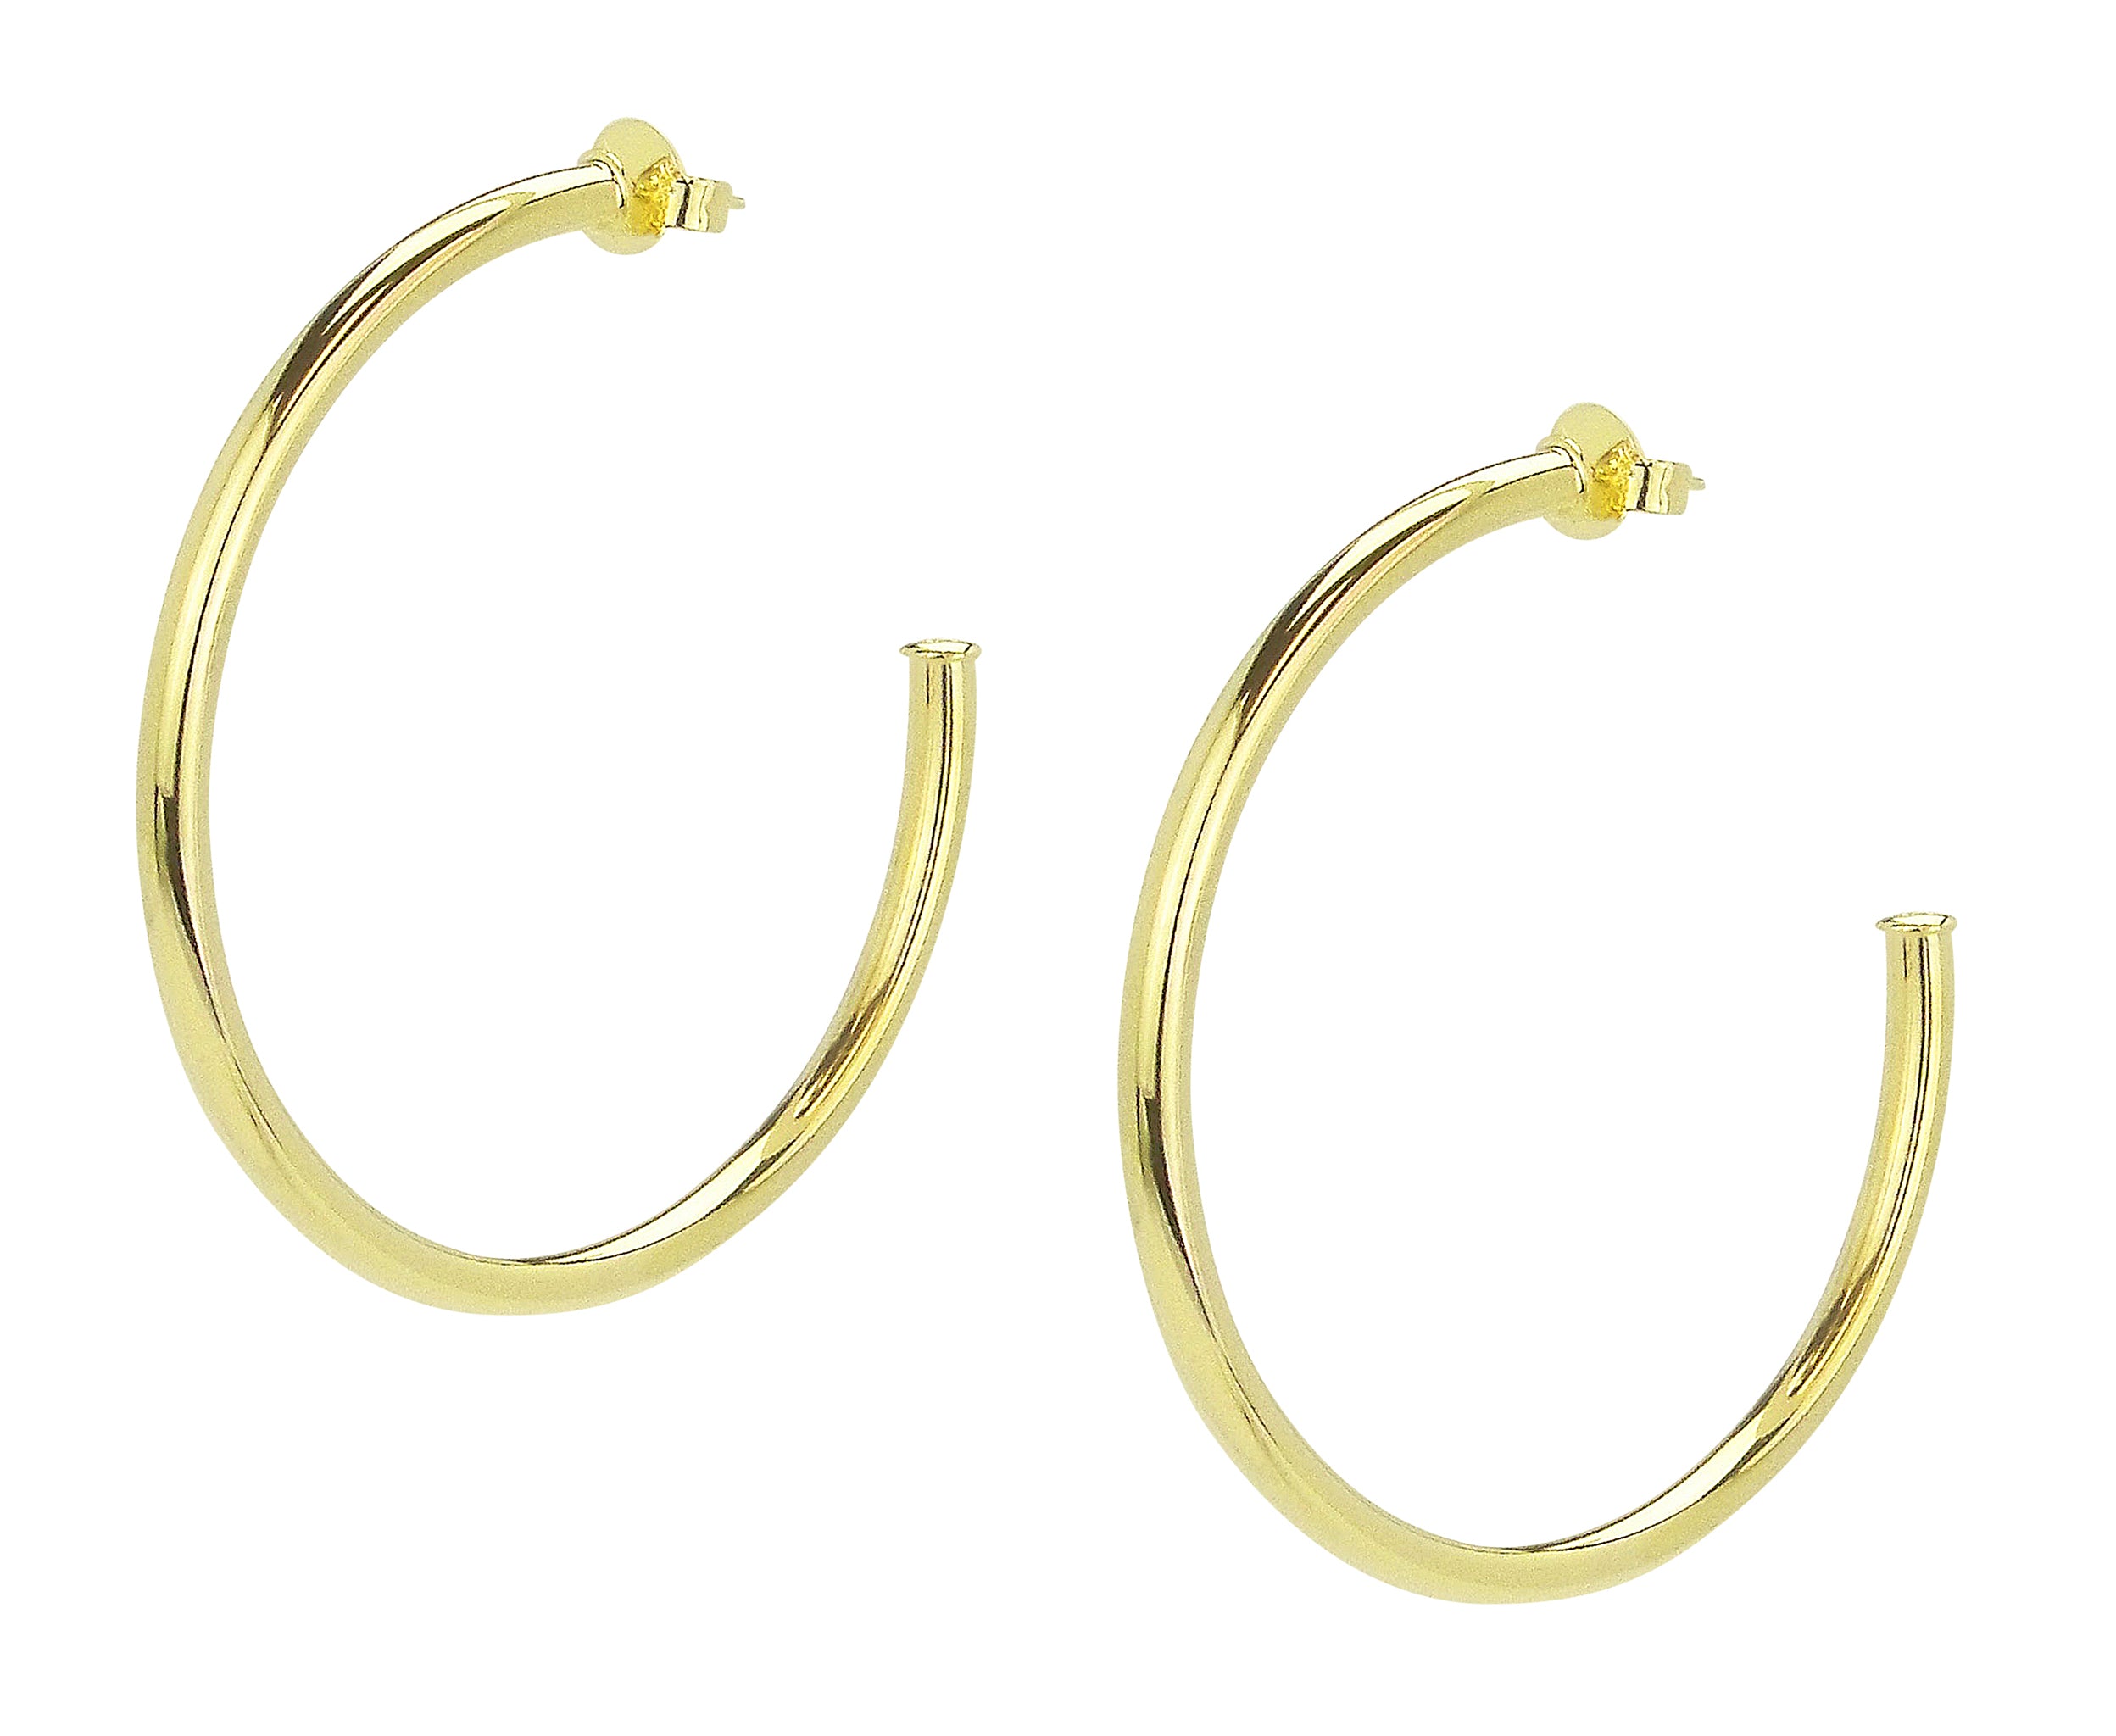 Pair of Sheila Fajl Everybody's Favorite Hoop Earrings in Polished Gold